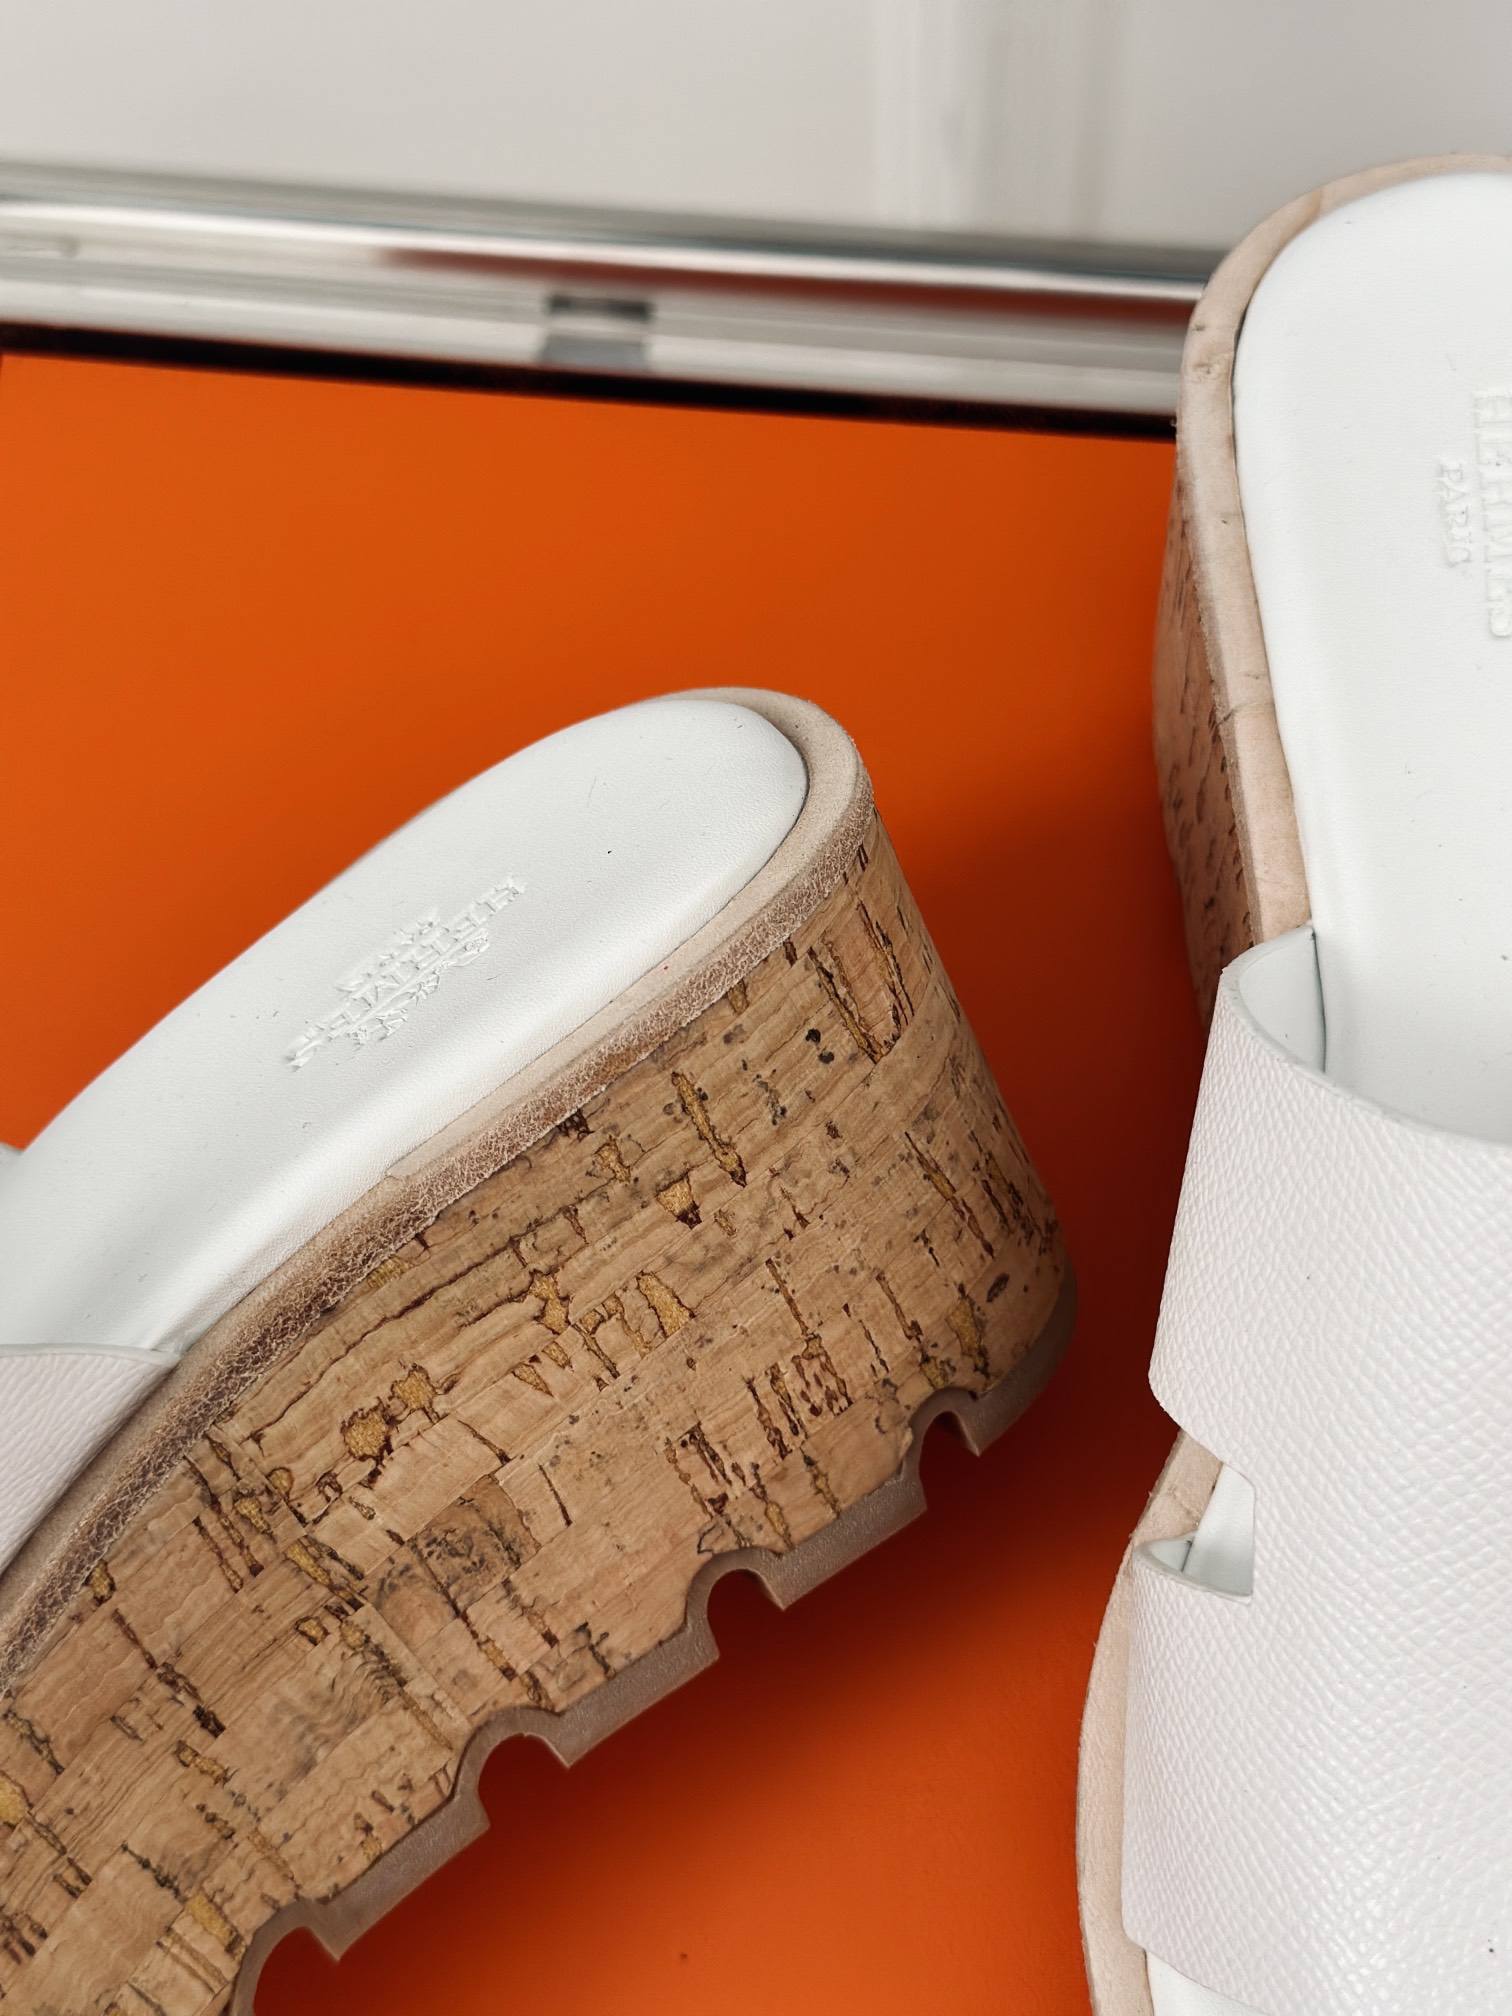 Hermès/爱马仕经典H厚底拖鞋依旧是永恒经典的H造型极约复古的设计浓厚的异域风情厚底在拉长腿方面真的